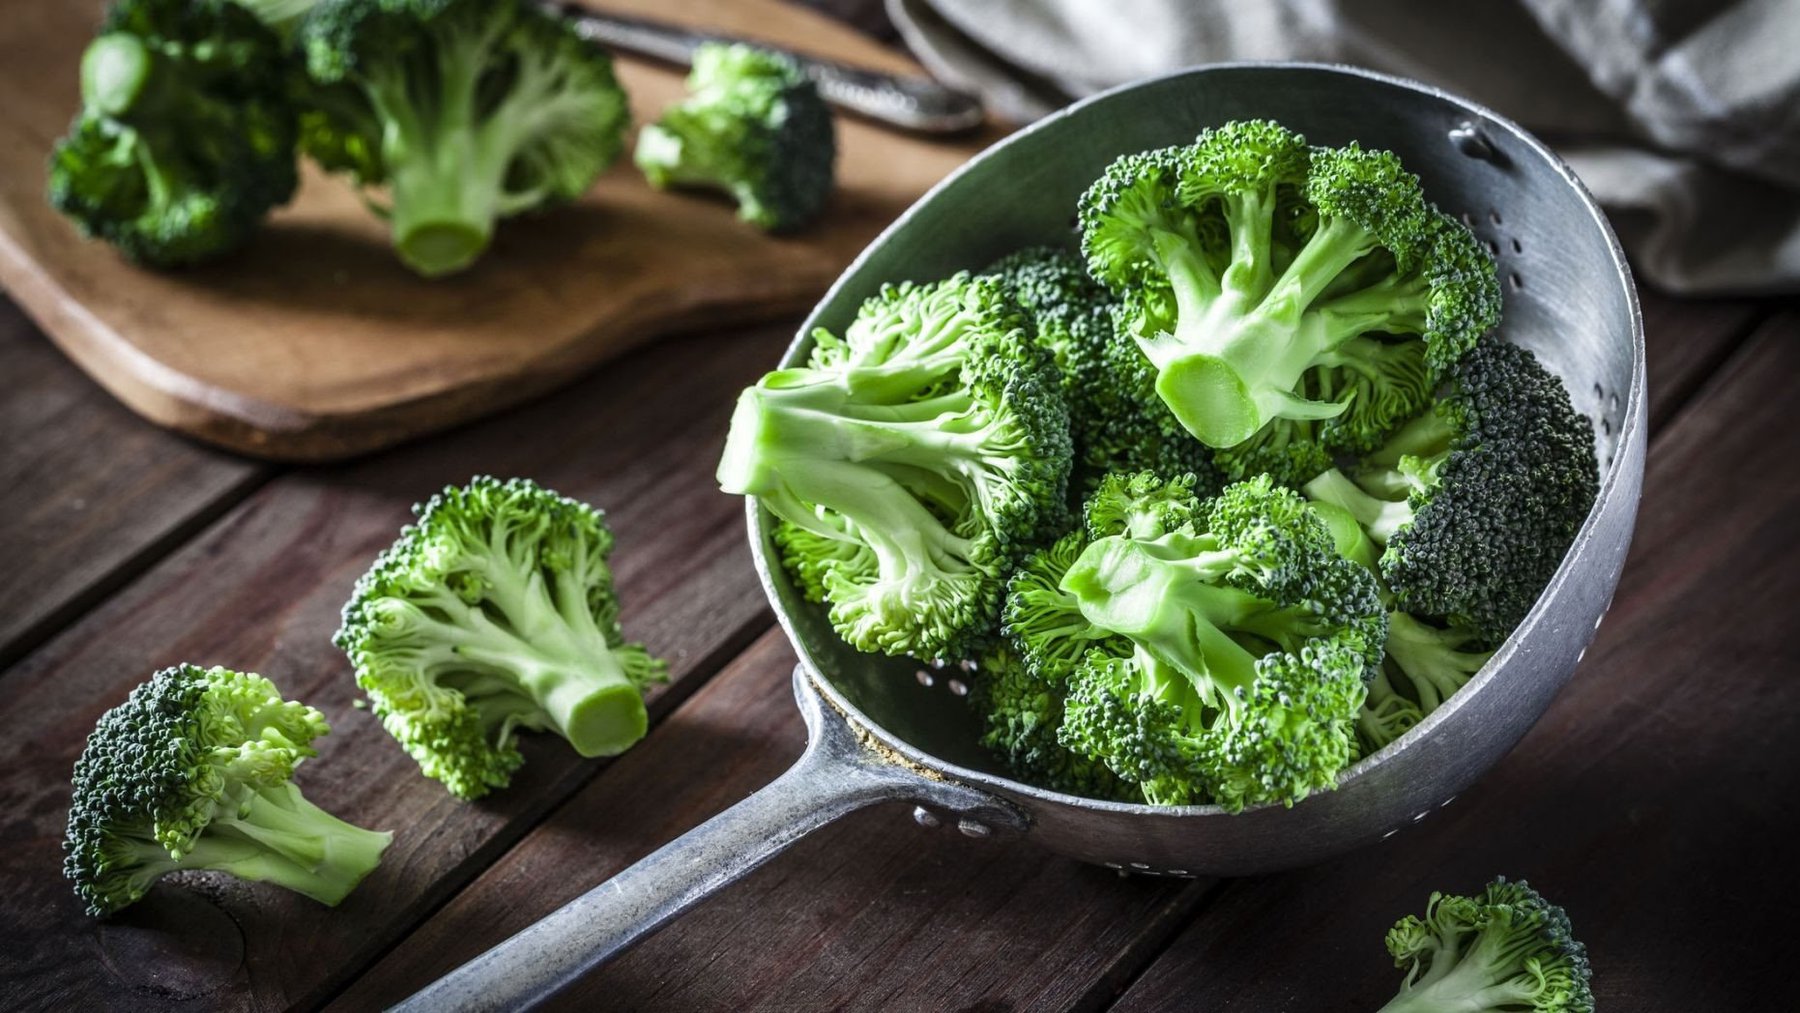   Bông cải xanh là thực phẩm tốt cho não bộ trong mùa thi  